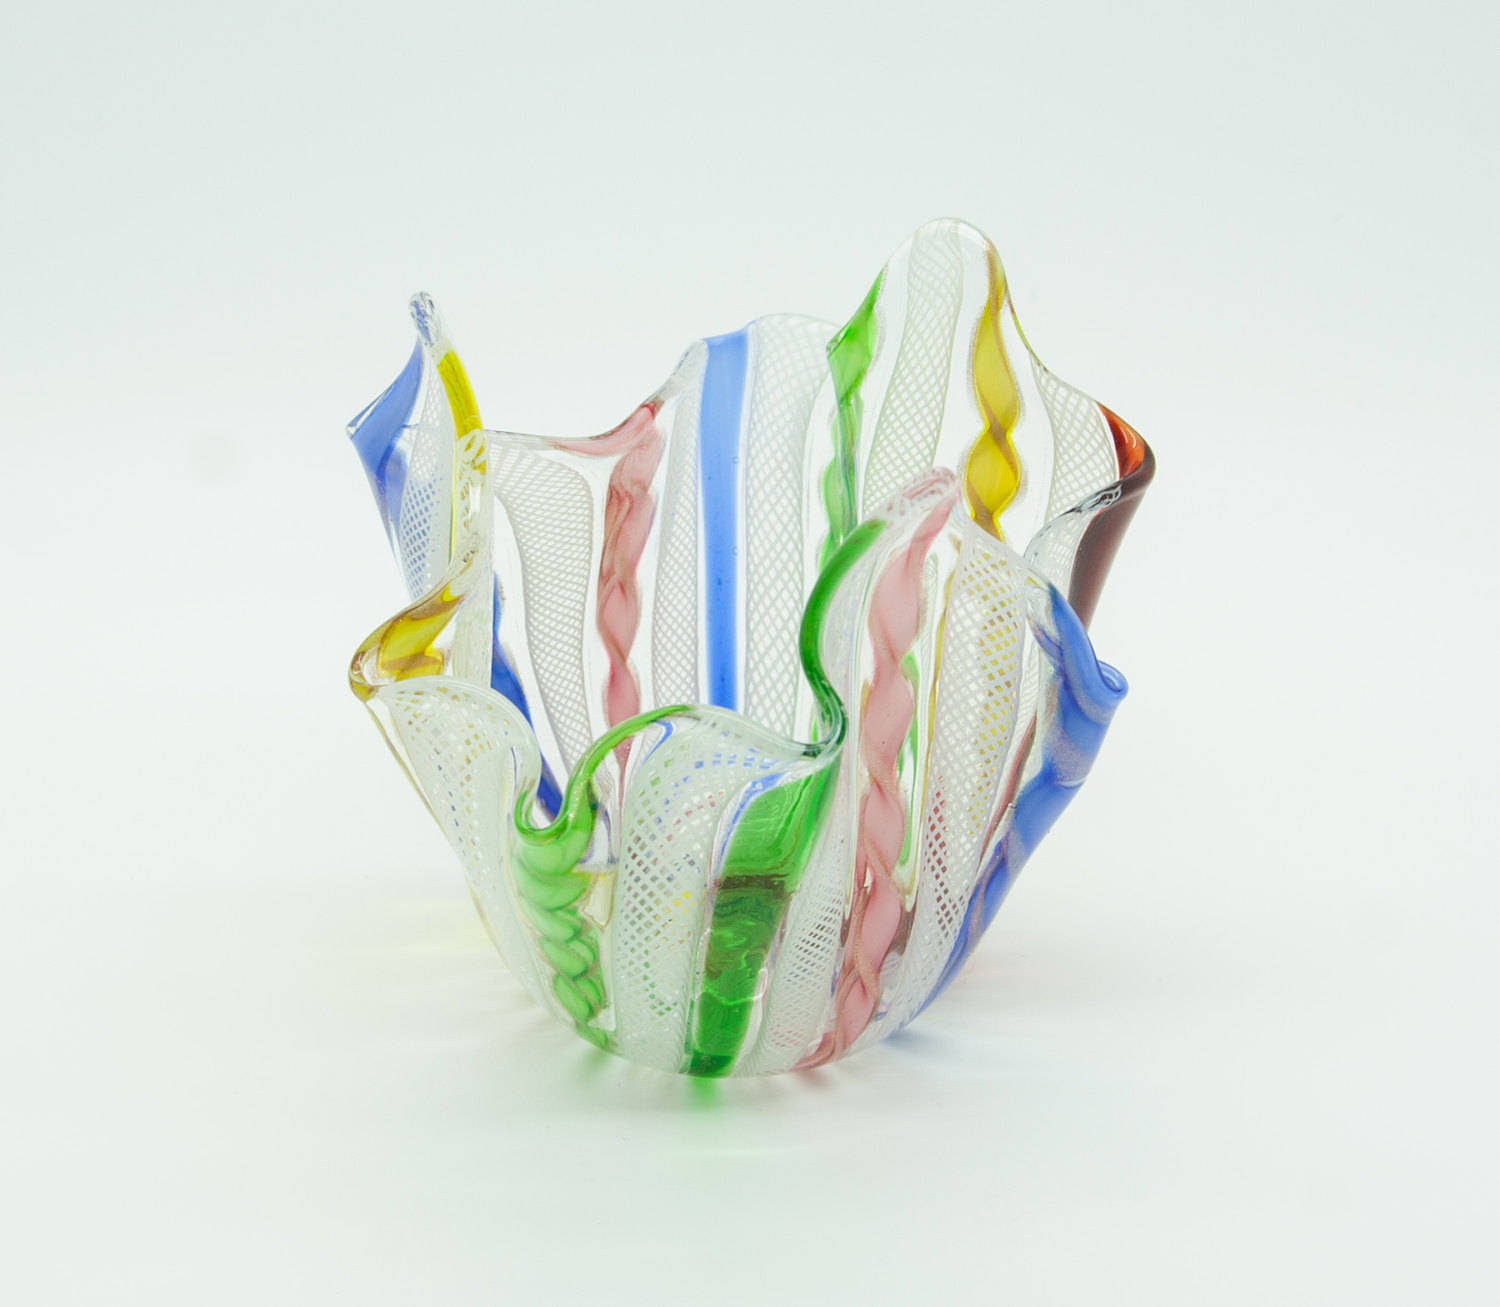 Zanfirico FAZZOLETTO Small Studio Art Glass Vase Mollaris.com 